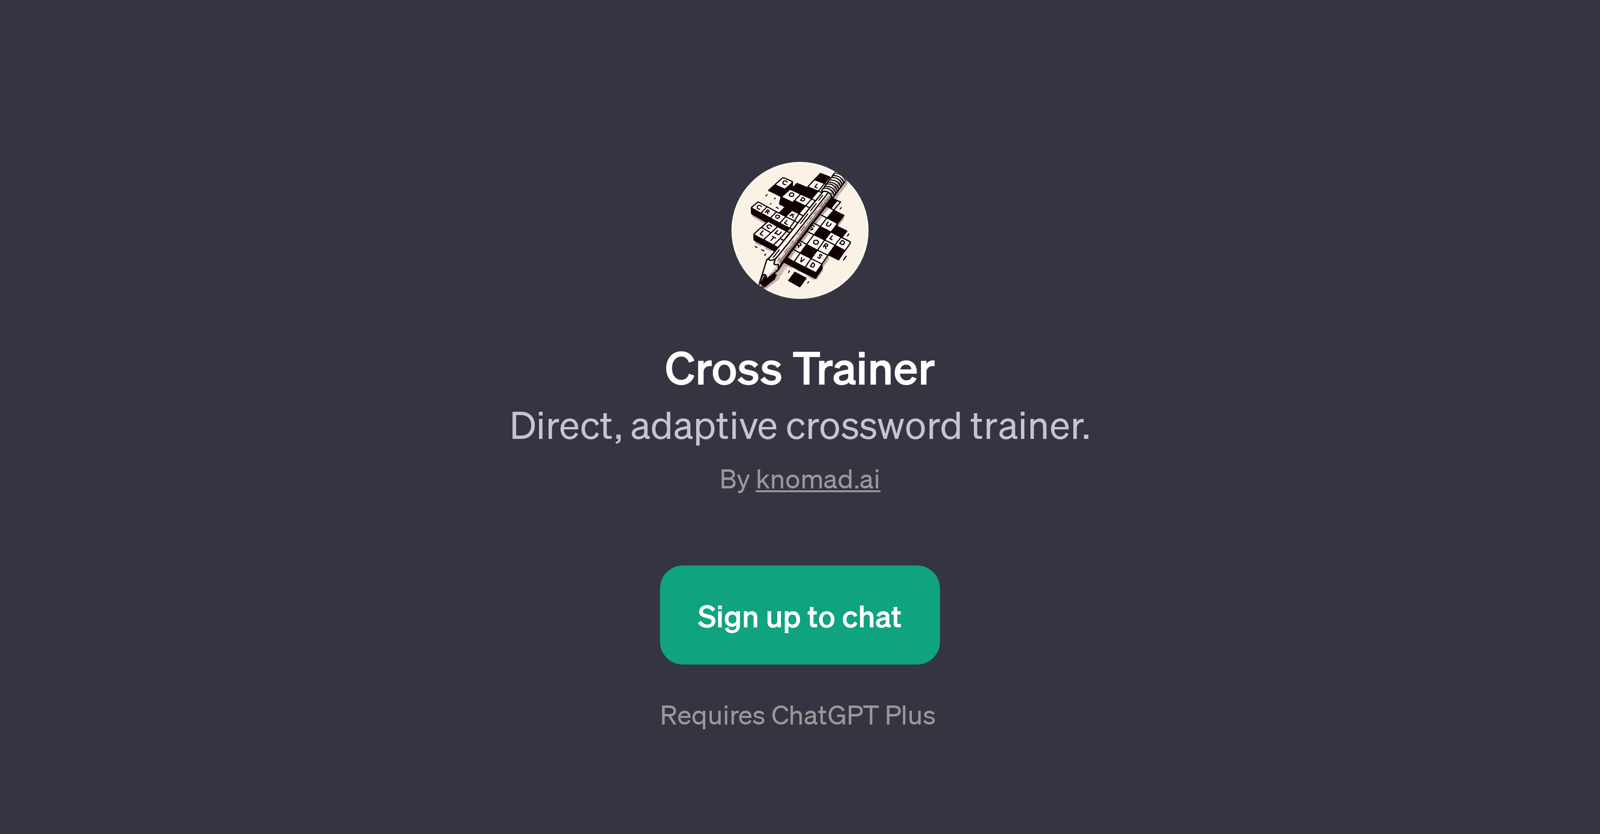 Cross Trainer website